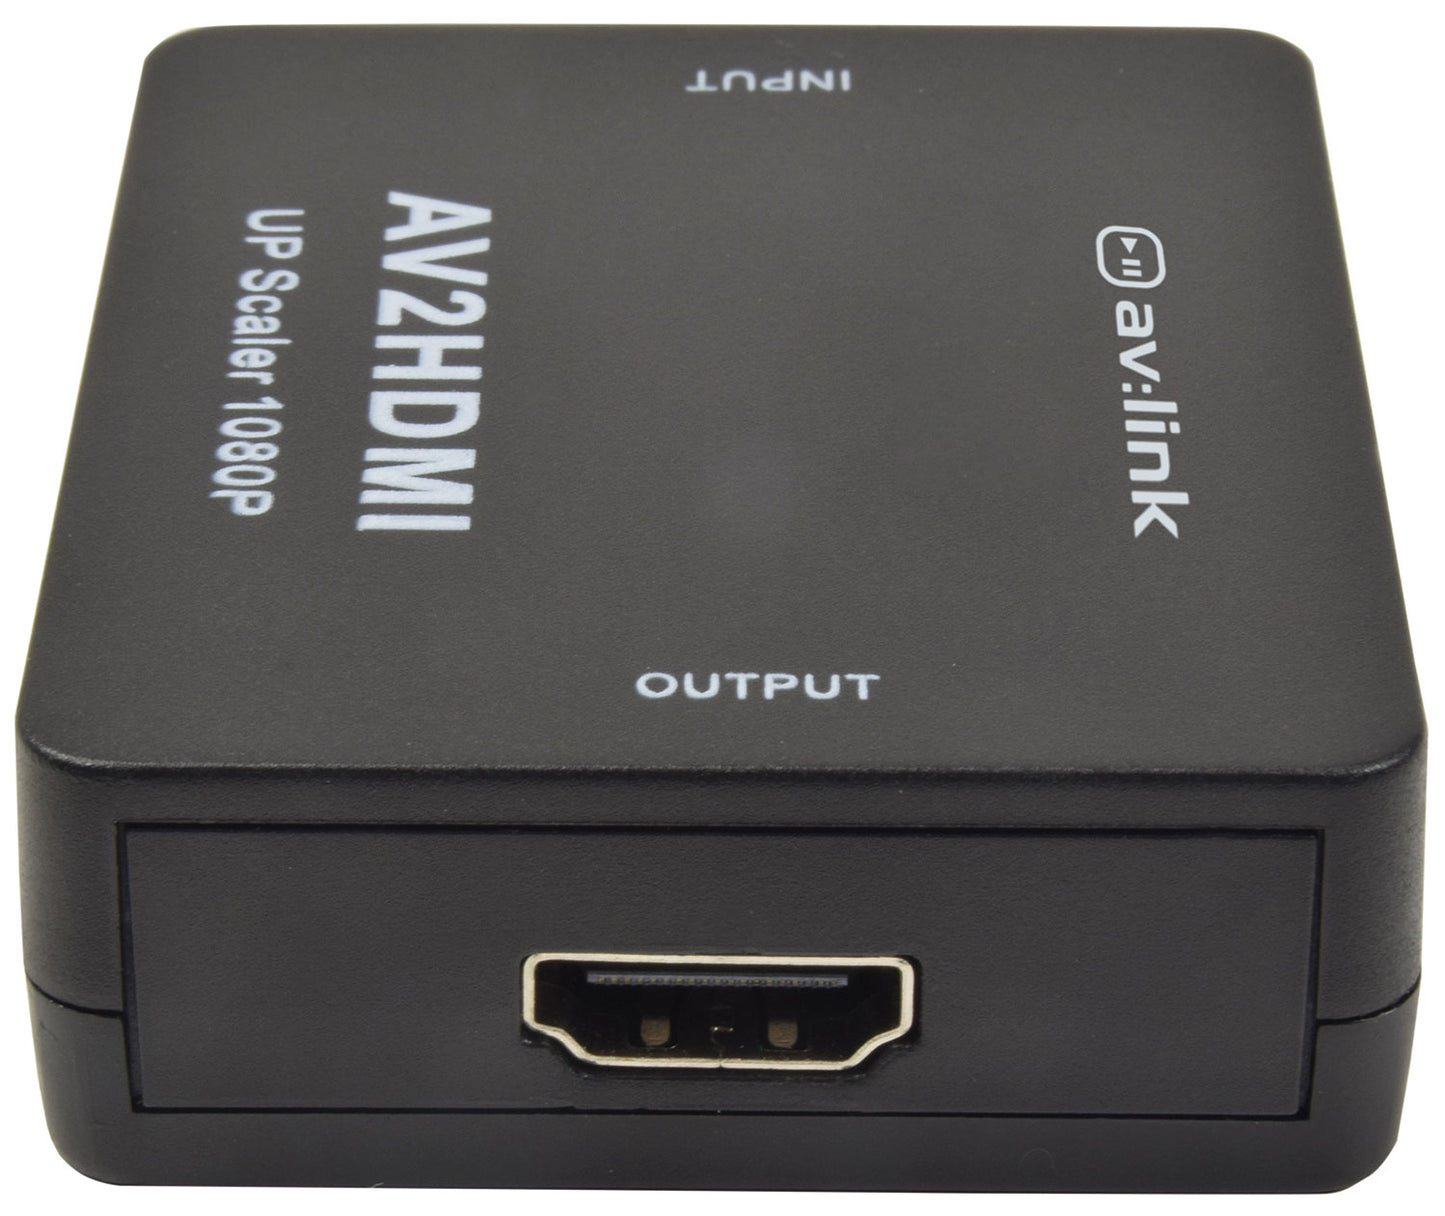 AV:Link RCA AV to HDMI Convertor 128.511UK